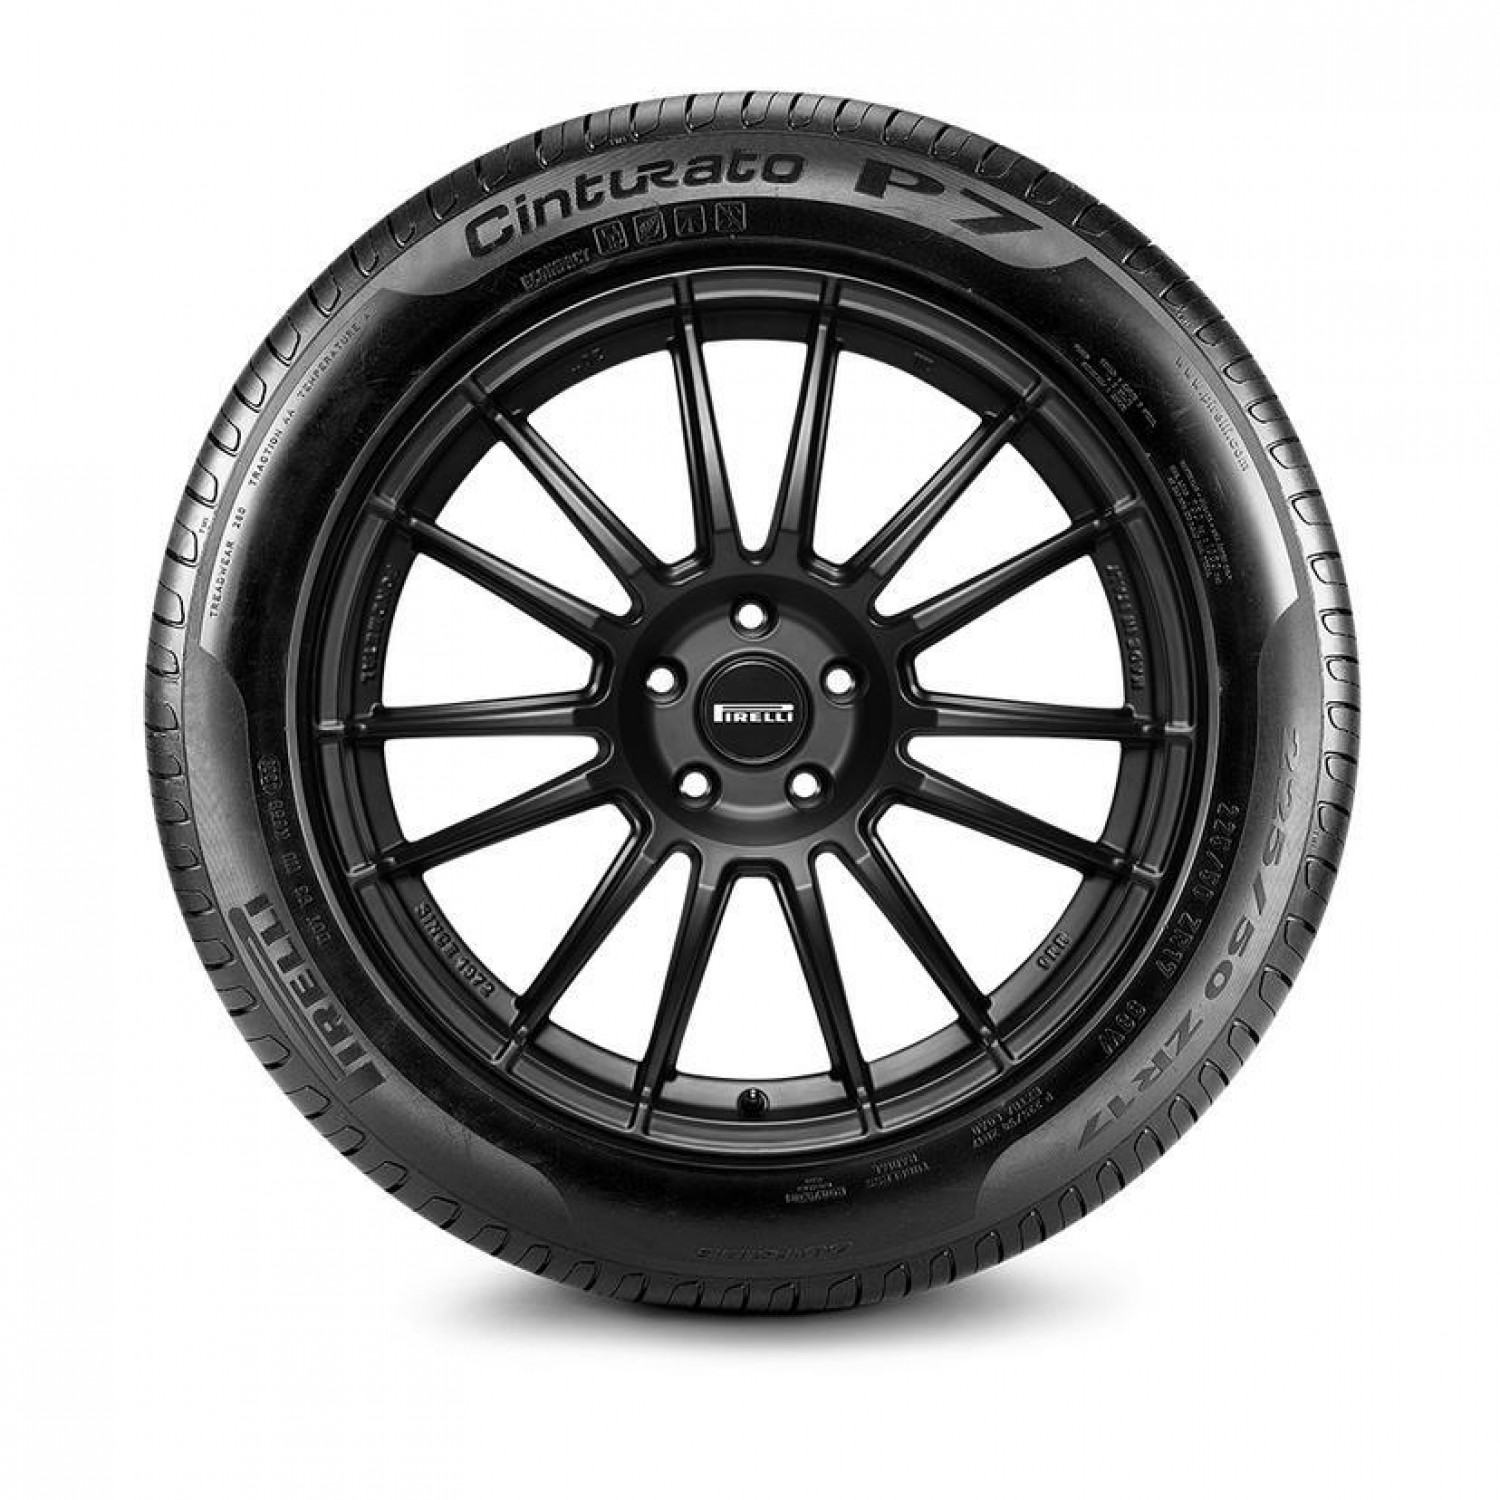 Pirelli Cinturato P7 Black Sidewall Tire (255/40R18 95Y OEM: BMW